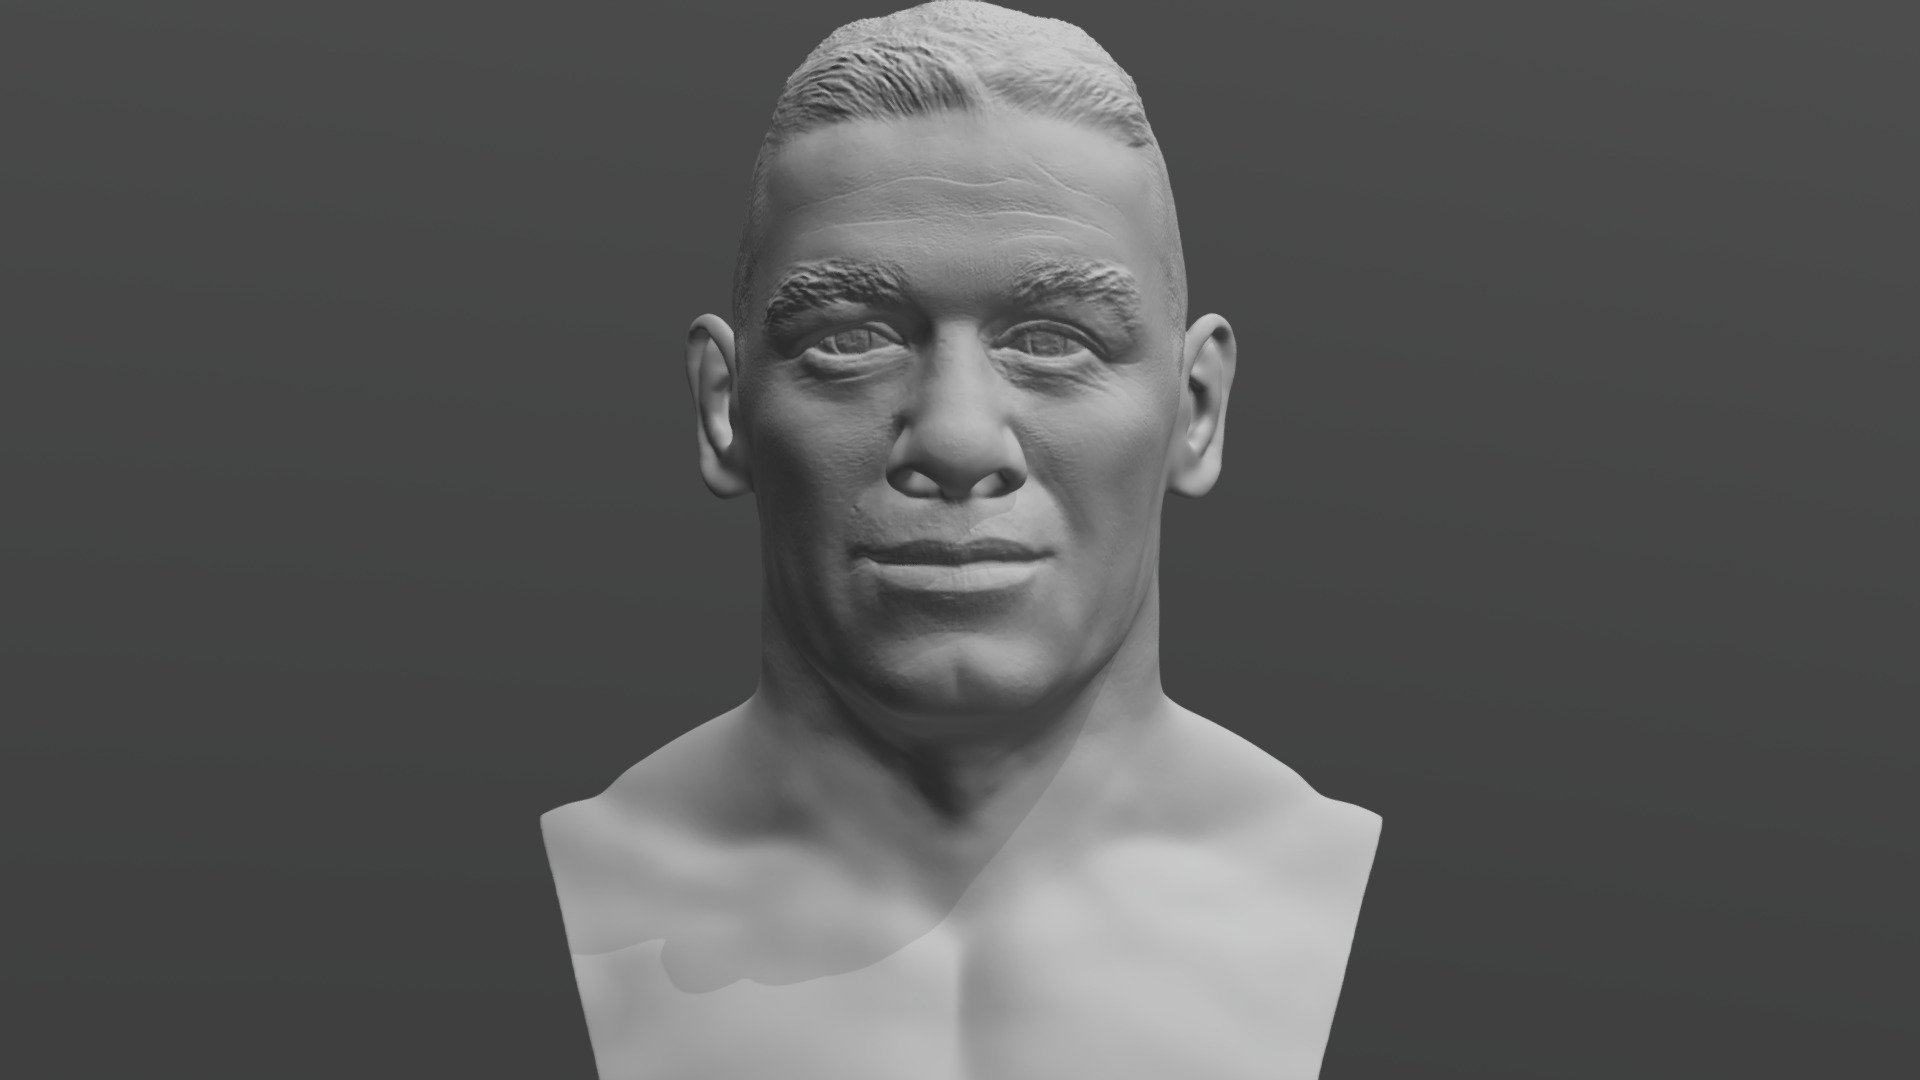 John Cena bust for 3D printing